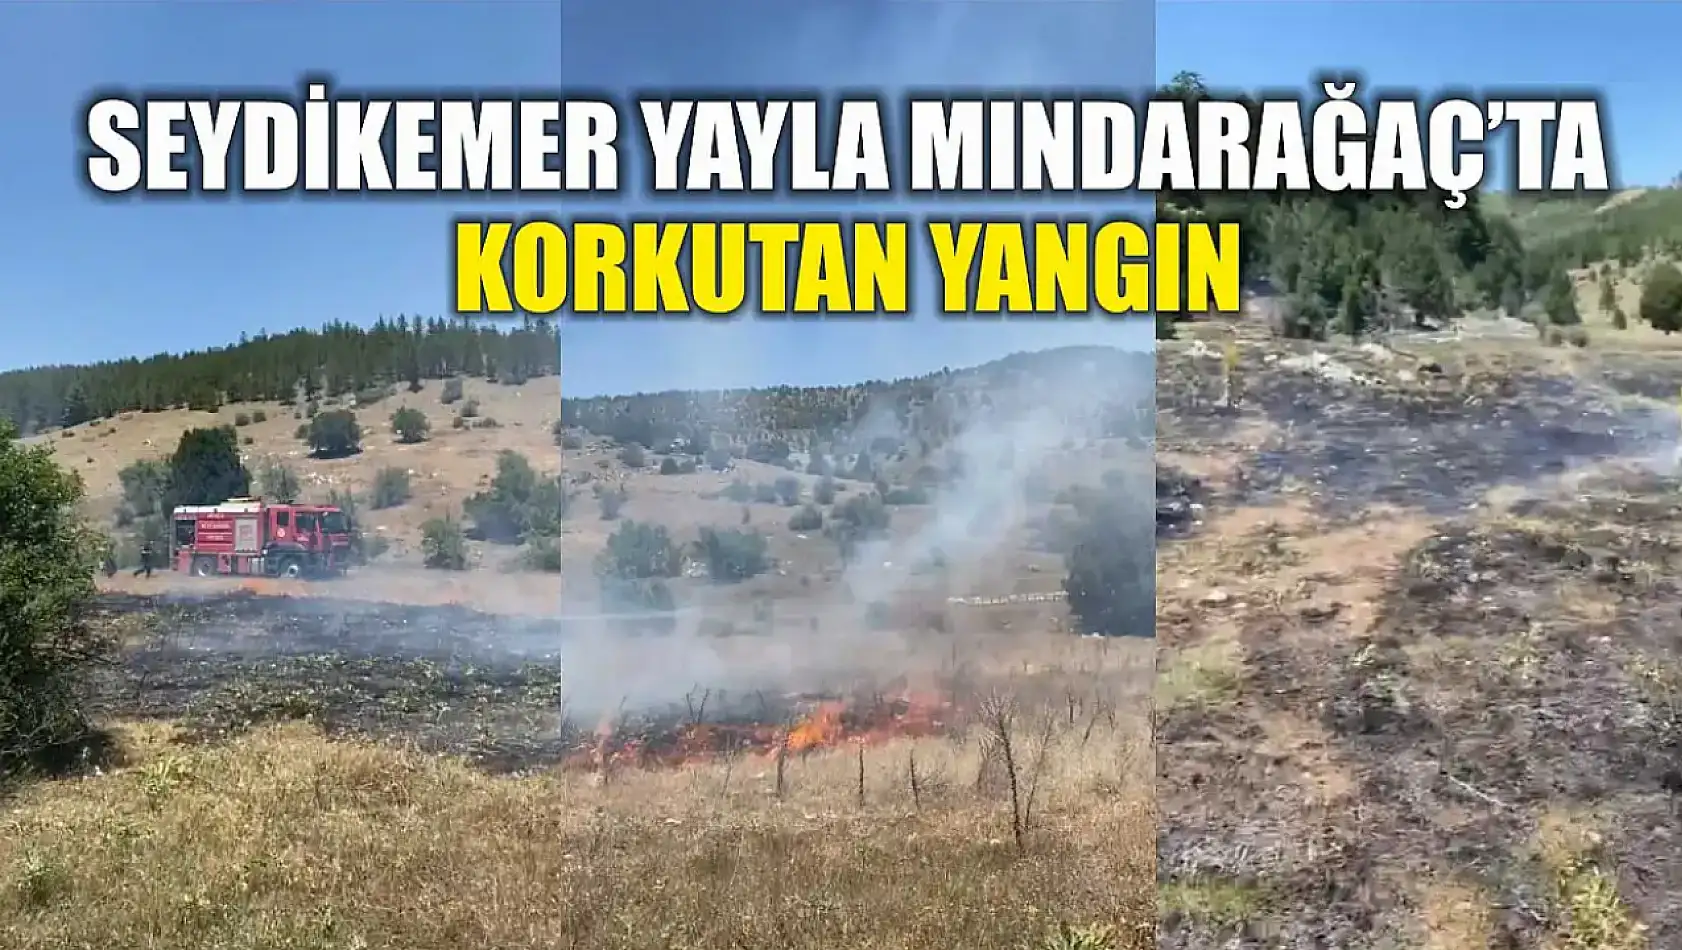 Seydikemer Yayla Mındarağaç'ta korkutan yangın